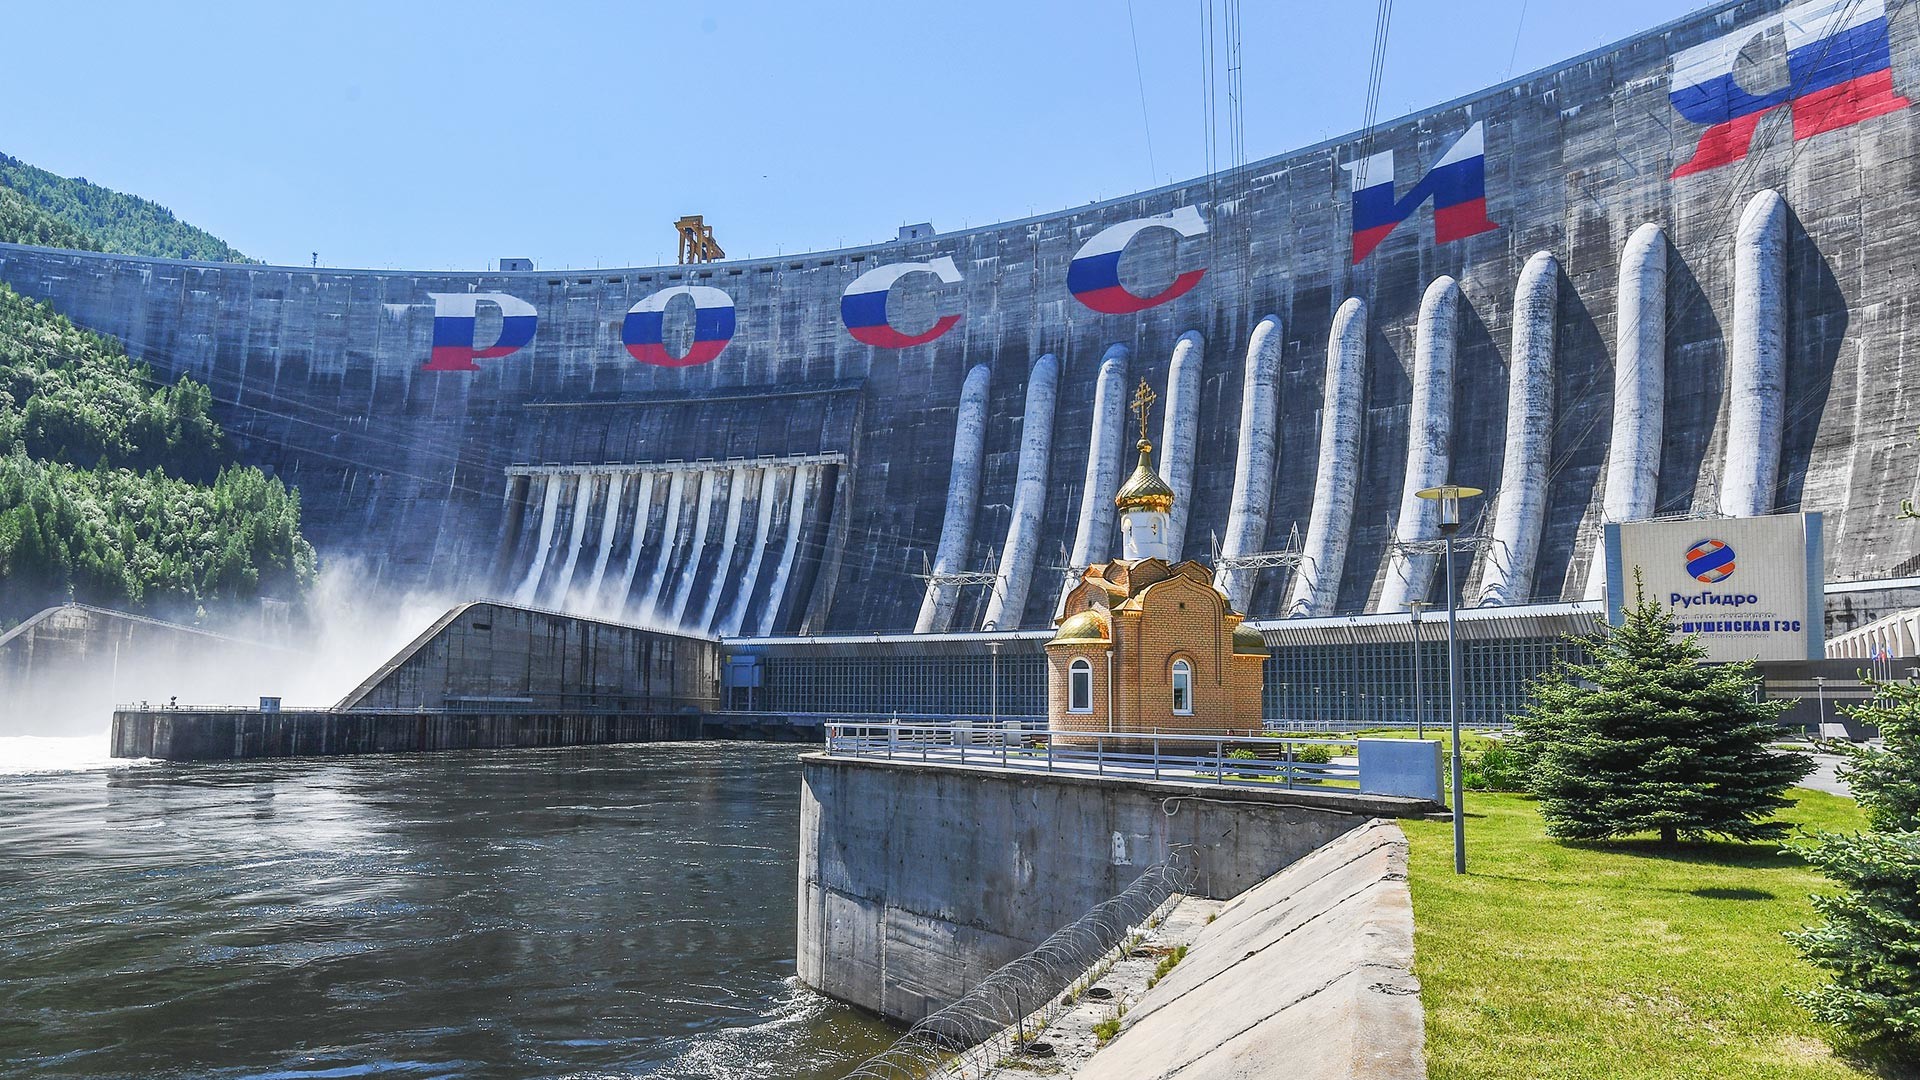 La centrale idroelettrica Sayano-Shushenskaya